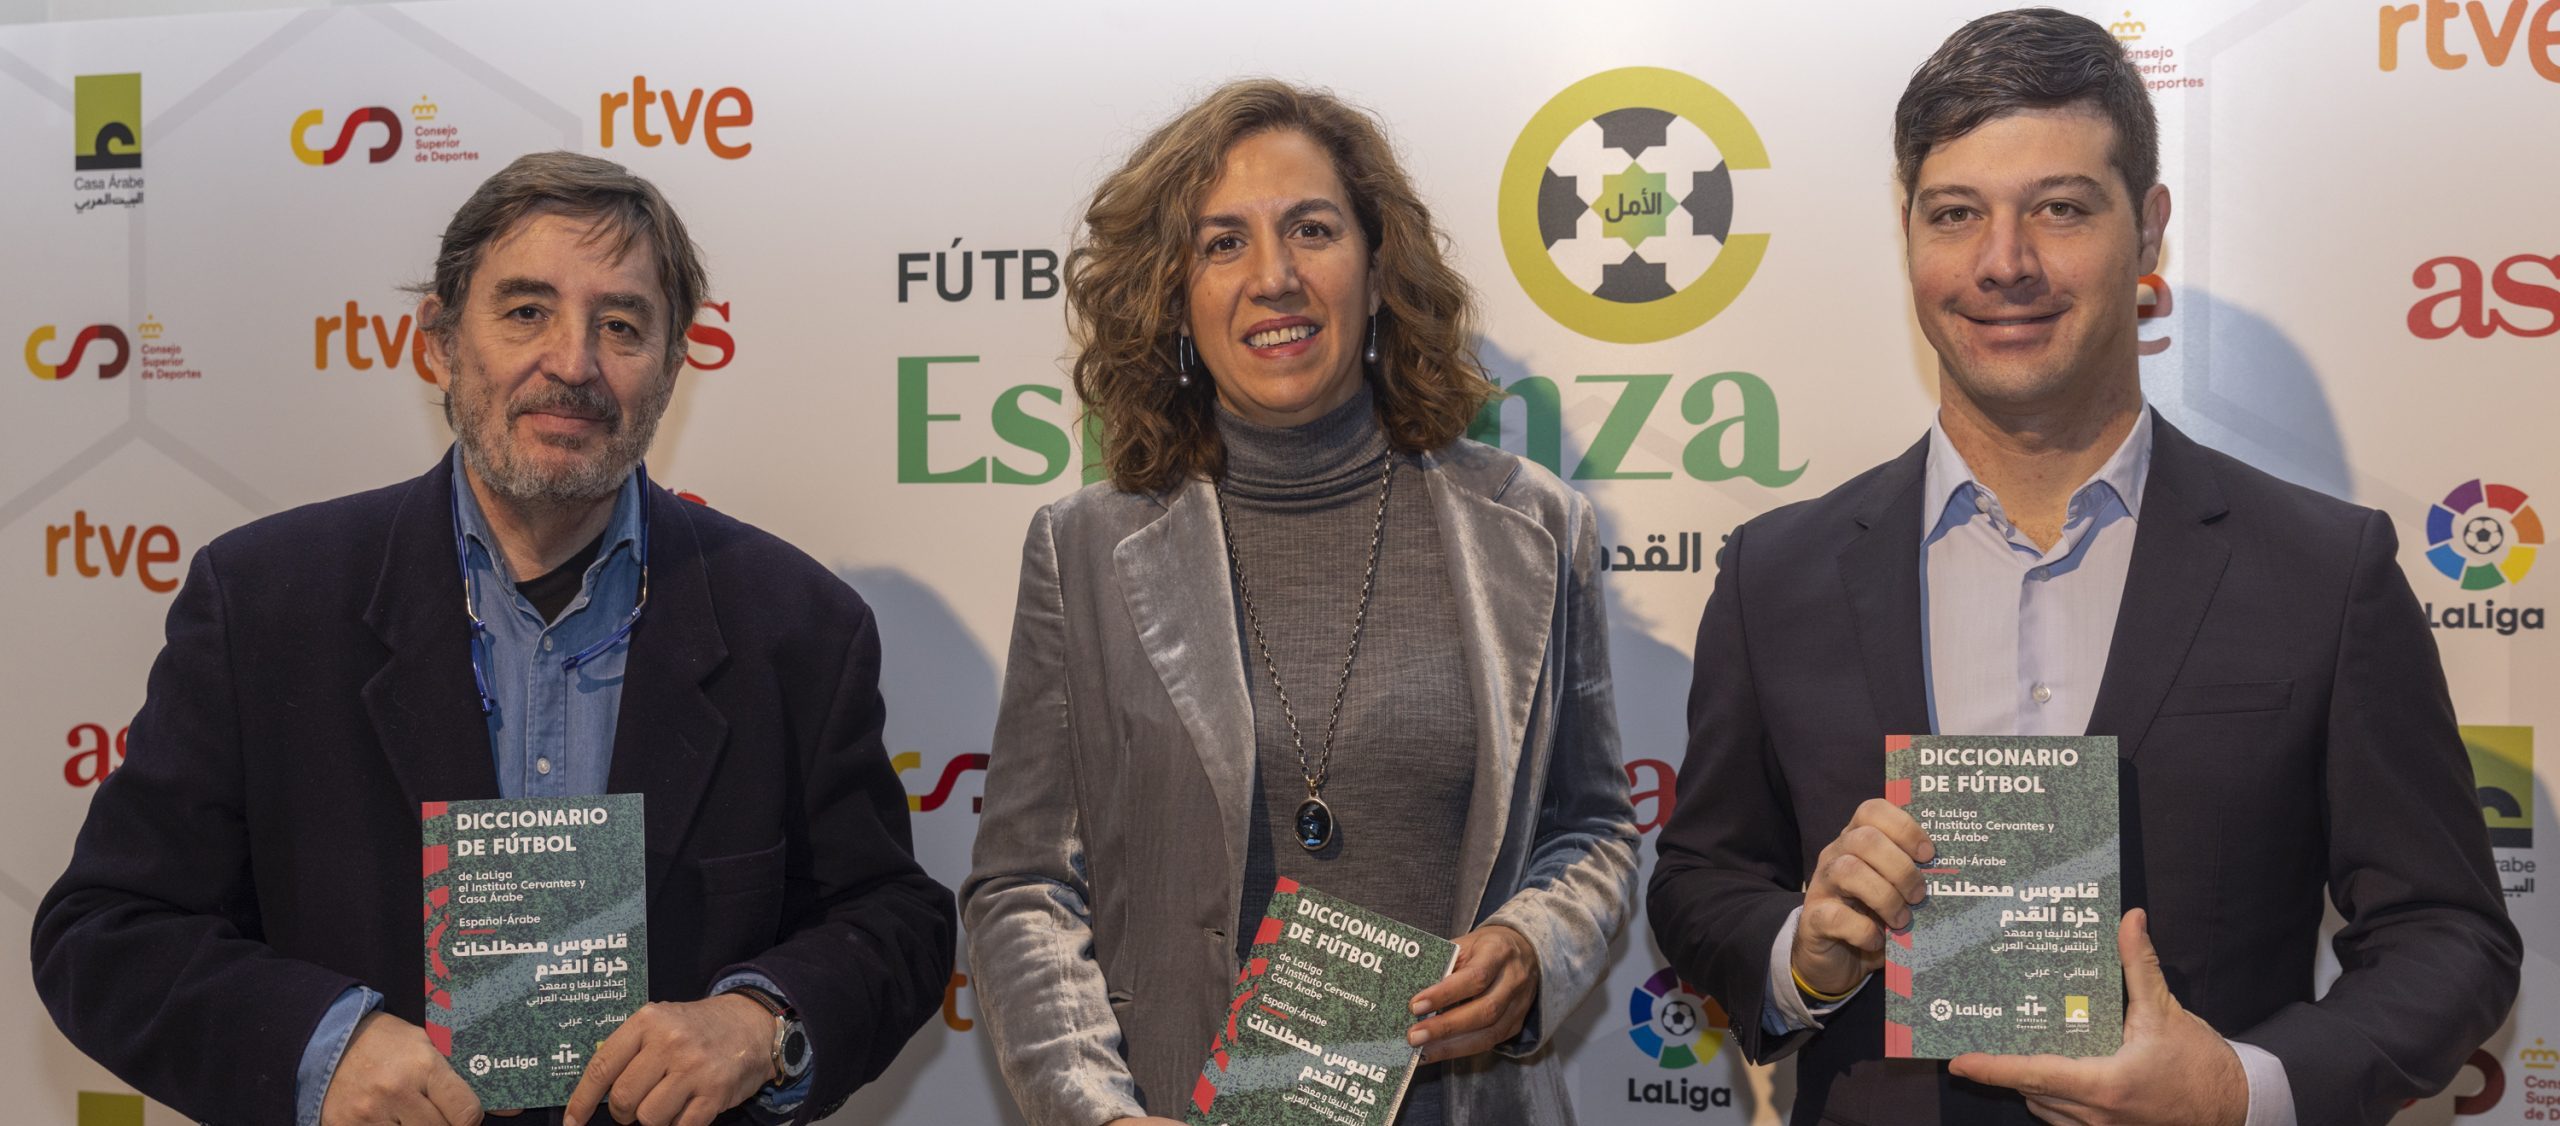 LaLiga, el Instituto Cervantes y Casa Árabe presentan el diccionario de fútbol español-árabe